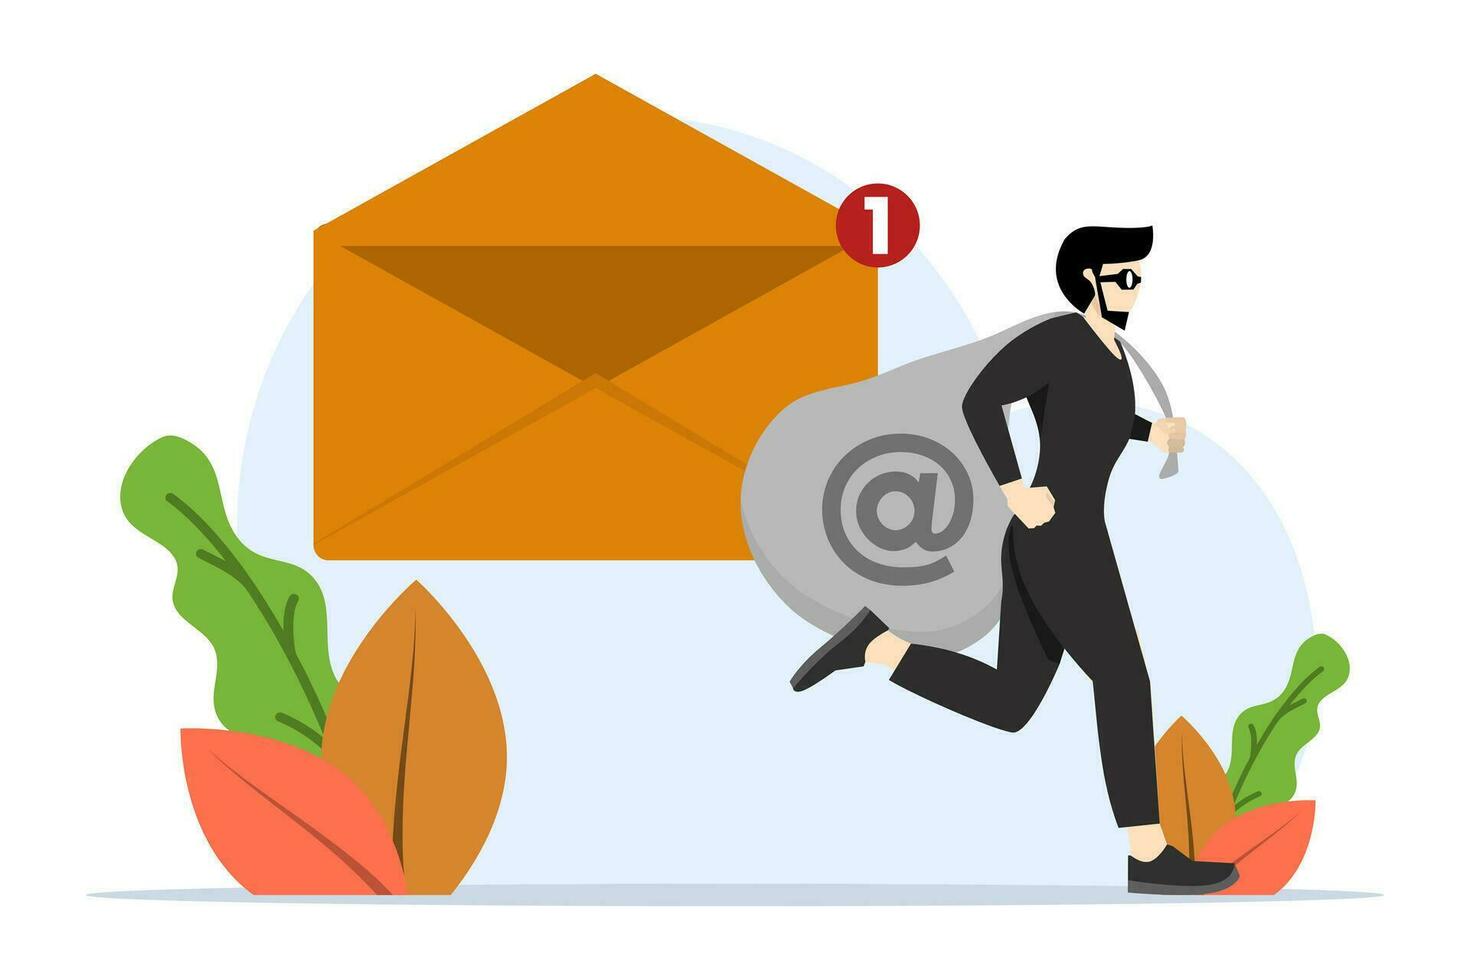 Dieb halten rot Tasche voll von Daten von Neu Email ohne Email, Daten Privatsphäre Dieb, Cyber Hacker oder Email Anbieter zeigen Anzeigen basierend auf Innerhalb Information Konzept, Geheimnis Privat Email. vektor